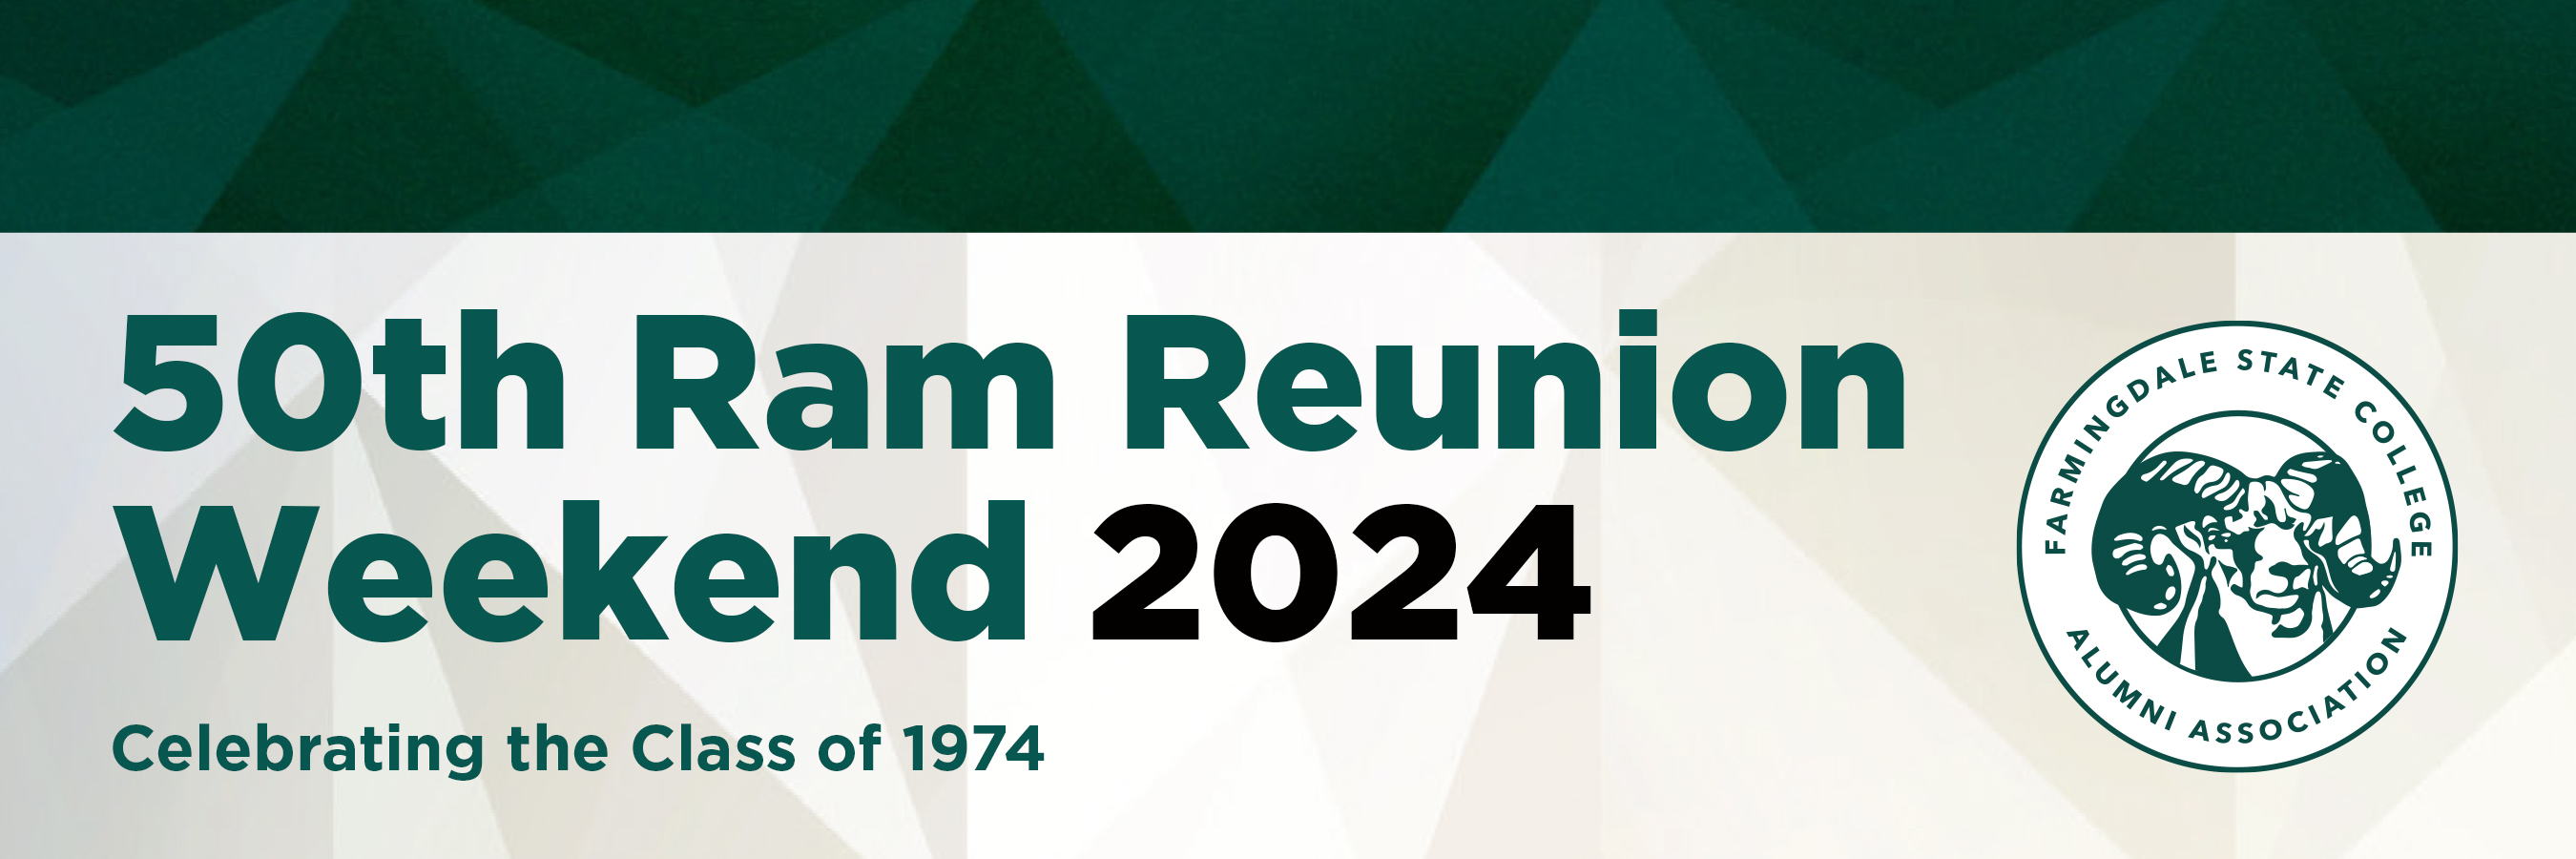 Ram Reunion 2024 Invite Graphic